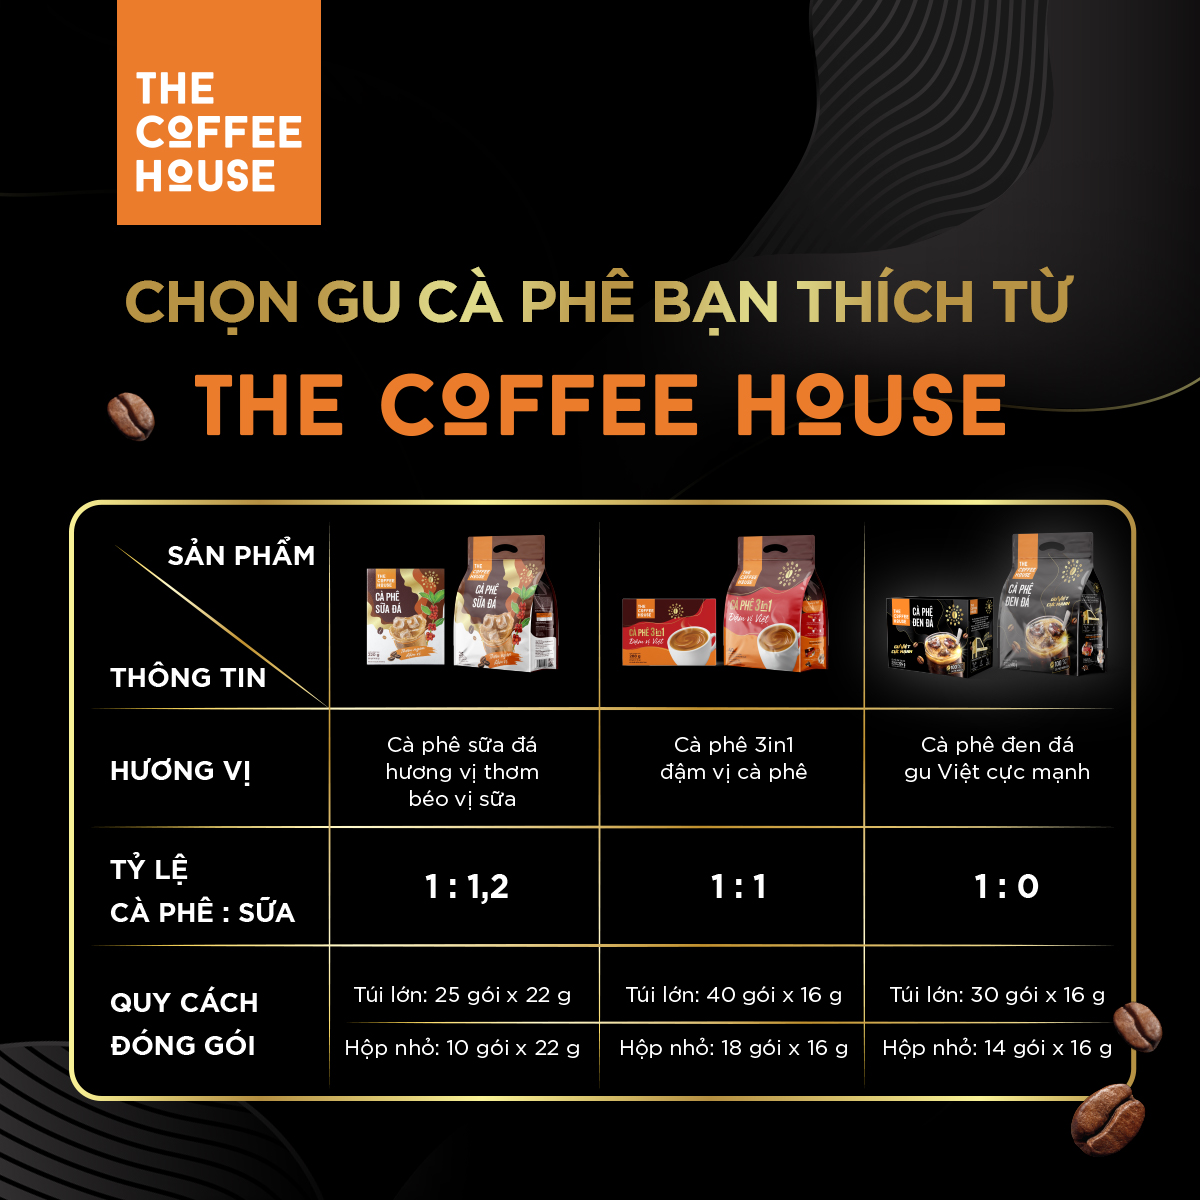 Túi cà phê đen đá The Coffee House (Túi 30 gói x 16 g)